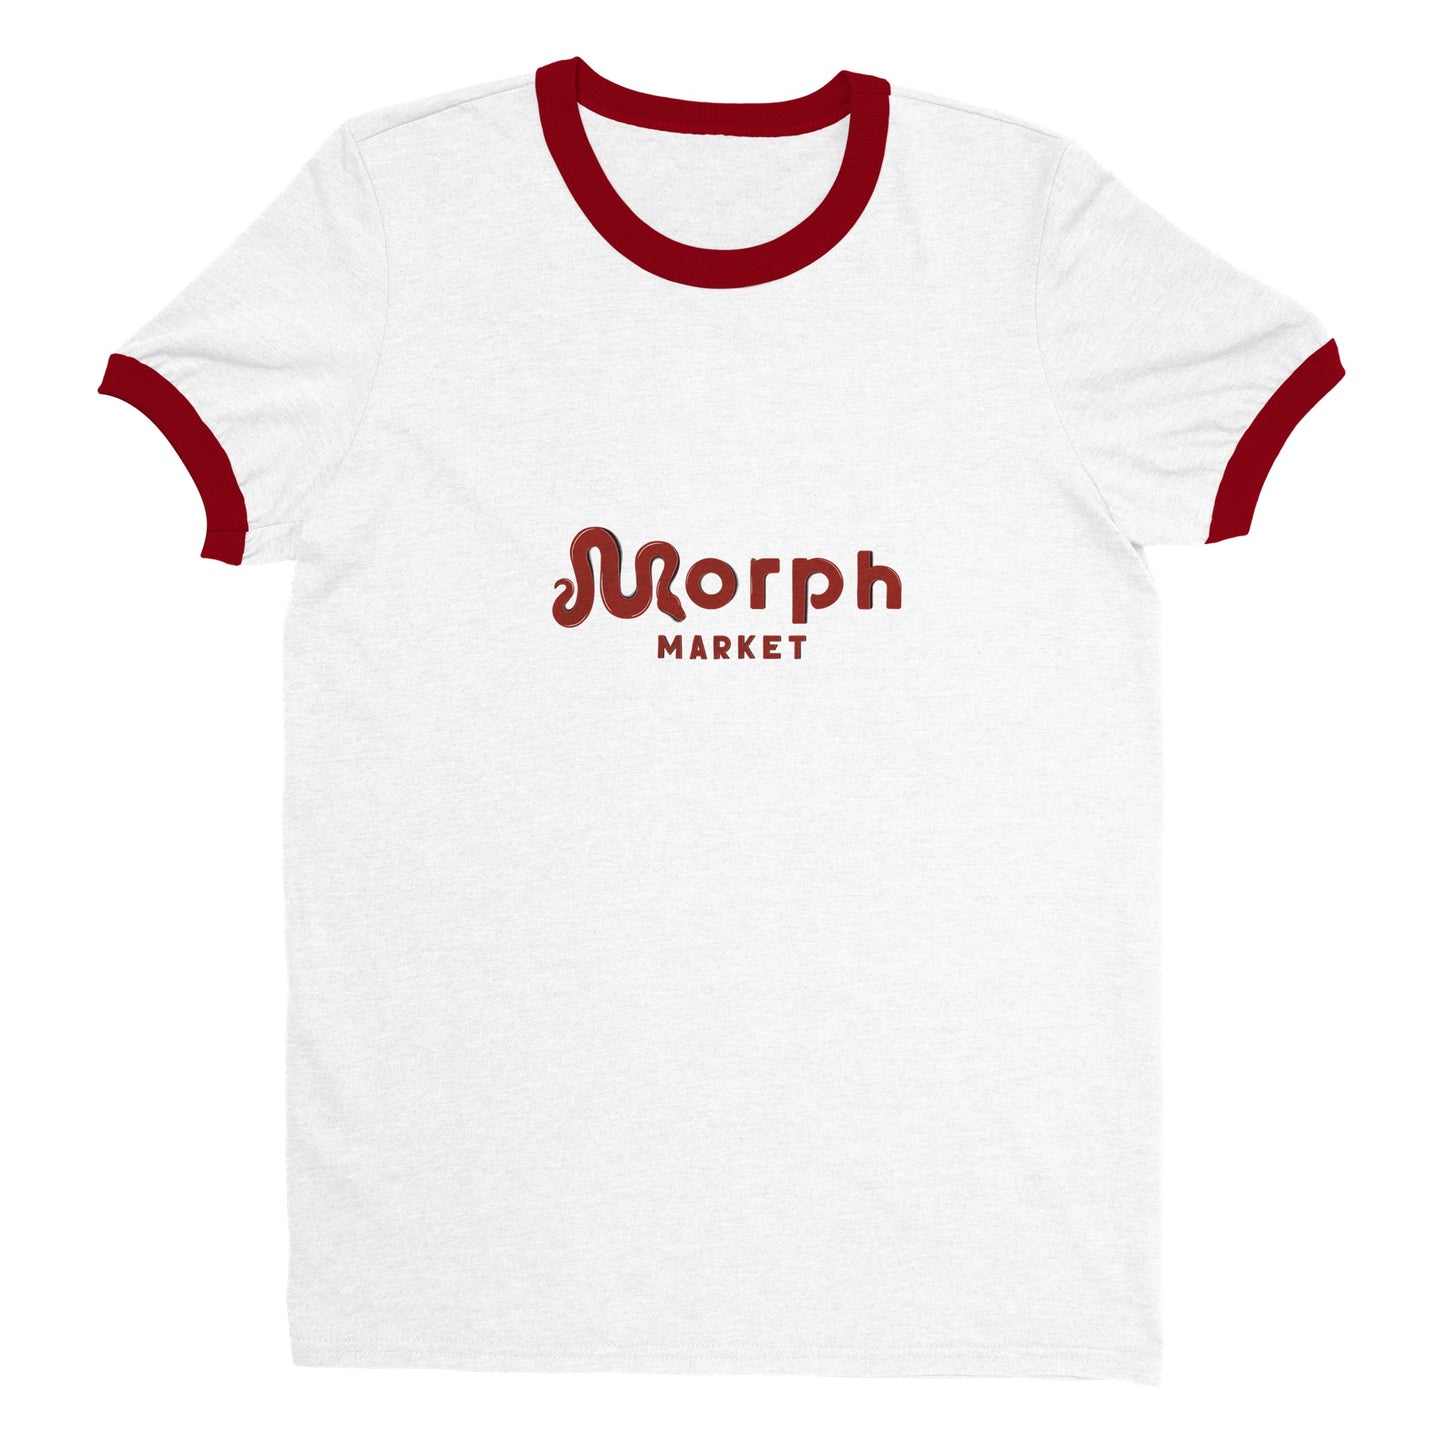 Morph Market (Red) - Unisex Ringer T-shirt